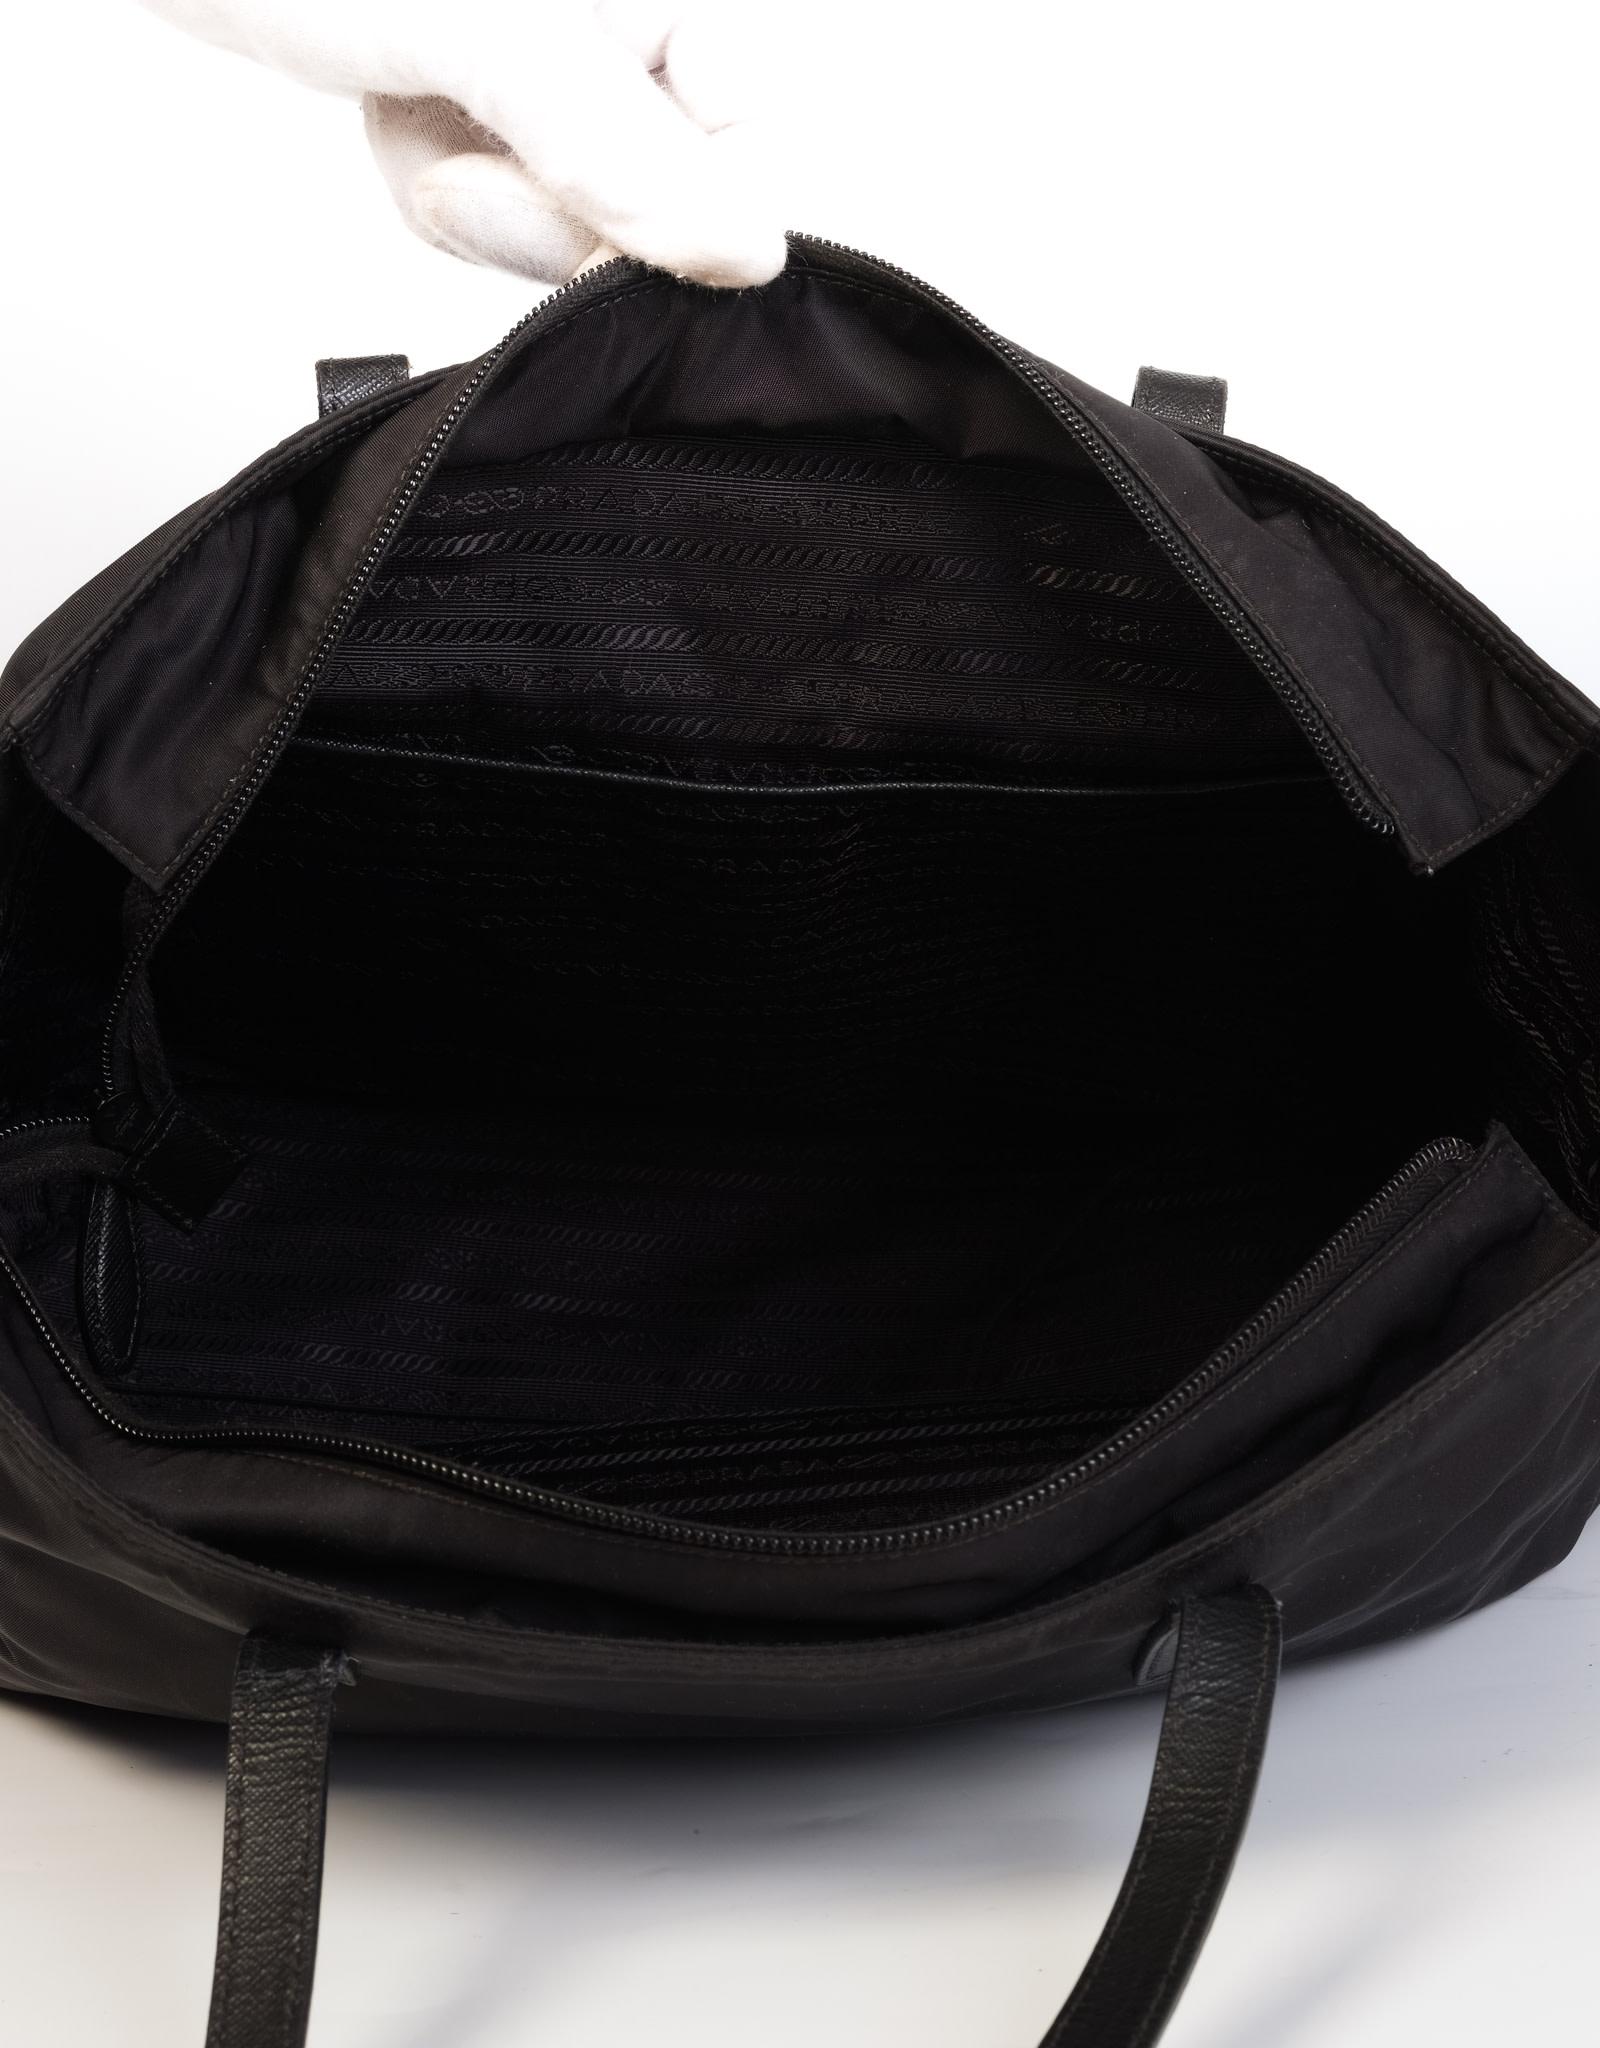 Prada Black Nylon Tessuto Vela Nero Tote Bag MM 4